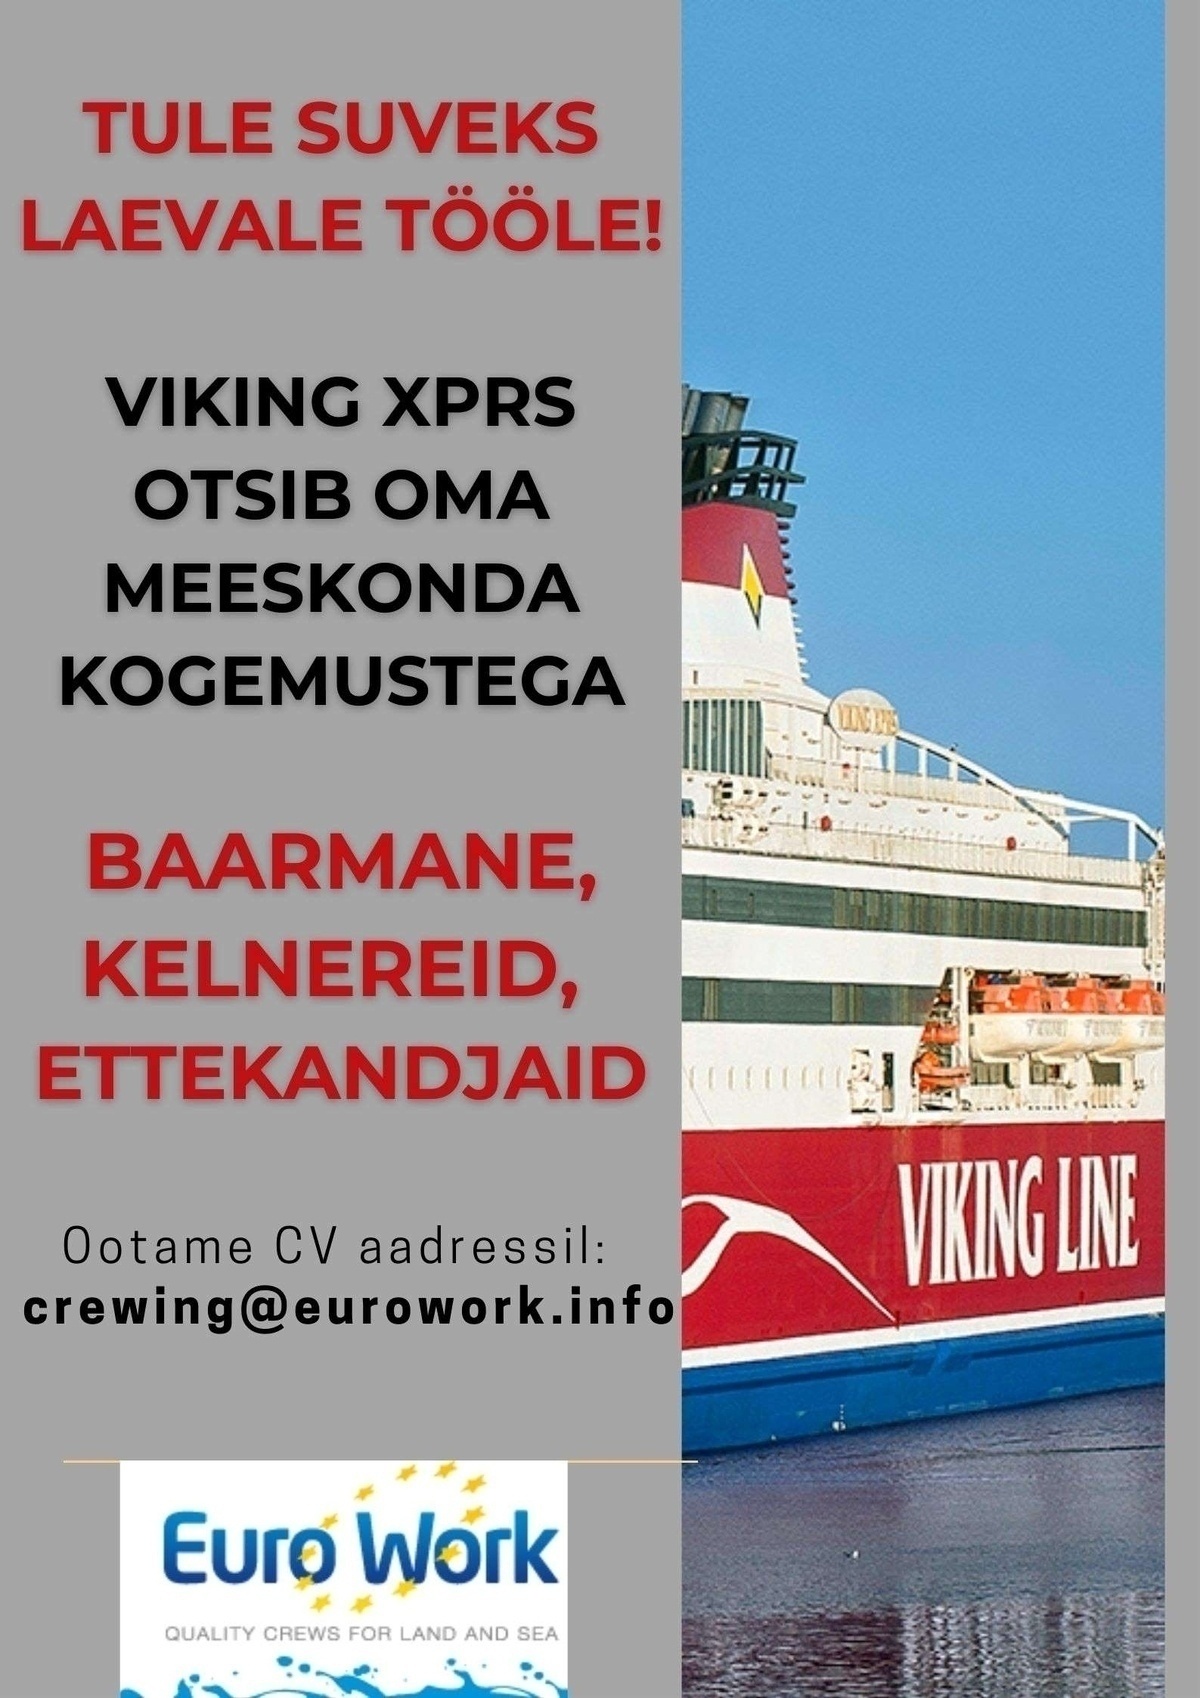 EURO WORK OÜ Baarman / baaridaam, kelner, ettekandaja reisiparvlaevale m/s Viking XPRS